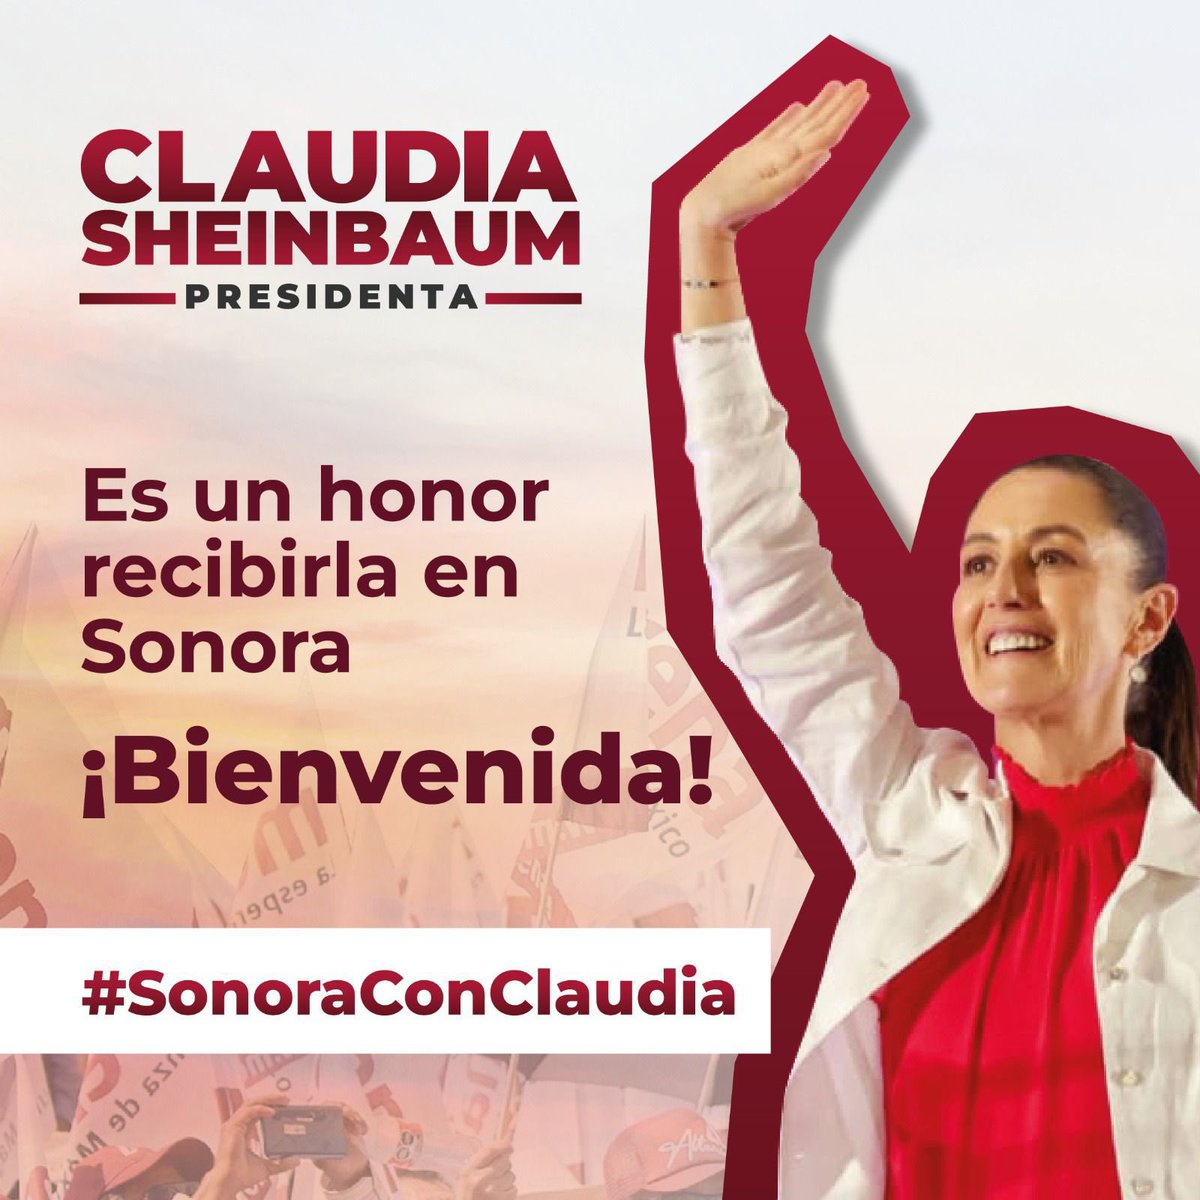 Bienvenida a Sonora Claudia Sheinbaum aquí todos somos parte de la 4T #SonoraConClaudia #ActivadosPorSonora #ClaudiaPresidenta #NogalesConClaudial